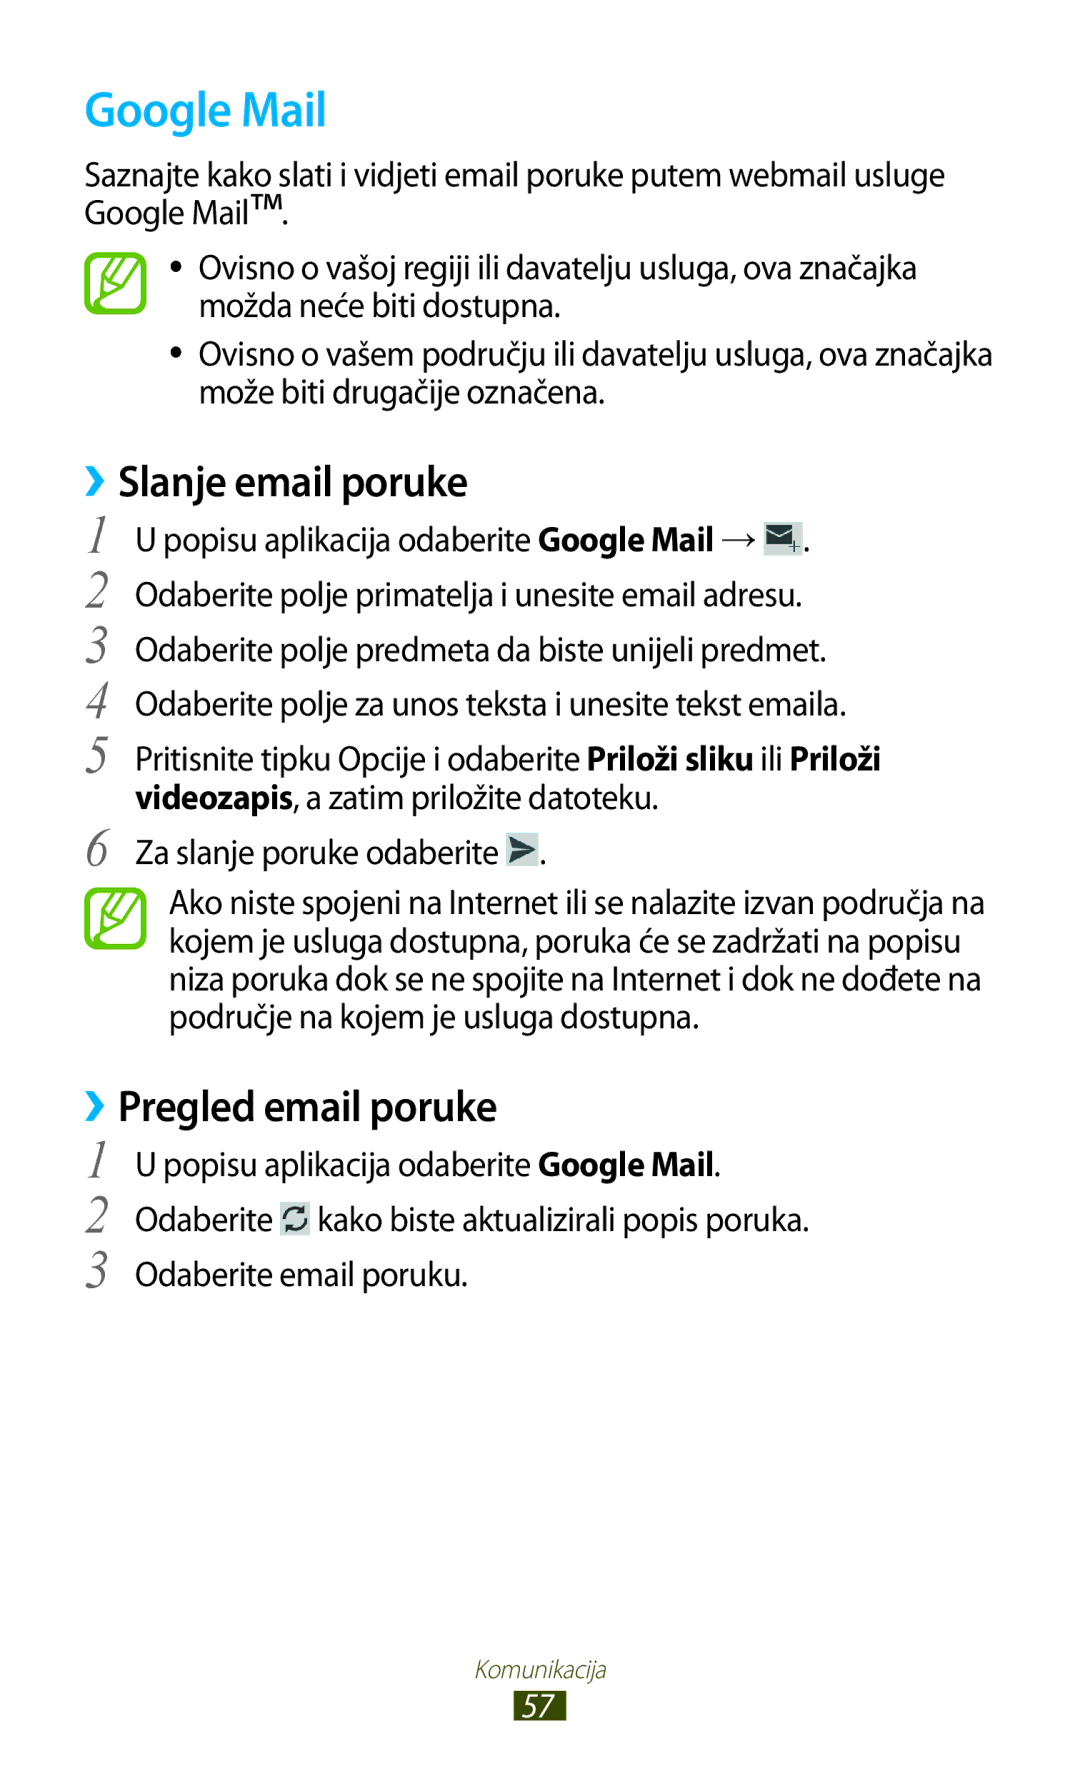 Samsung GT-S7560UWASEE manual ››Slanje email poruke, Pregled email poruke, Popisu aplikacija odaberite Google Mail 